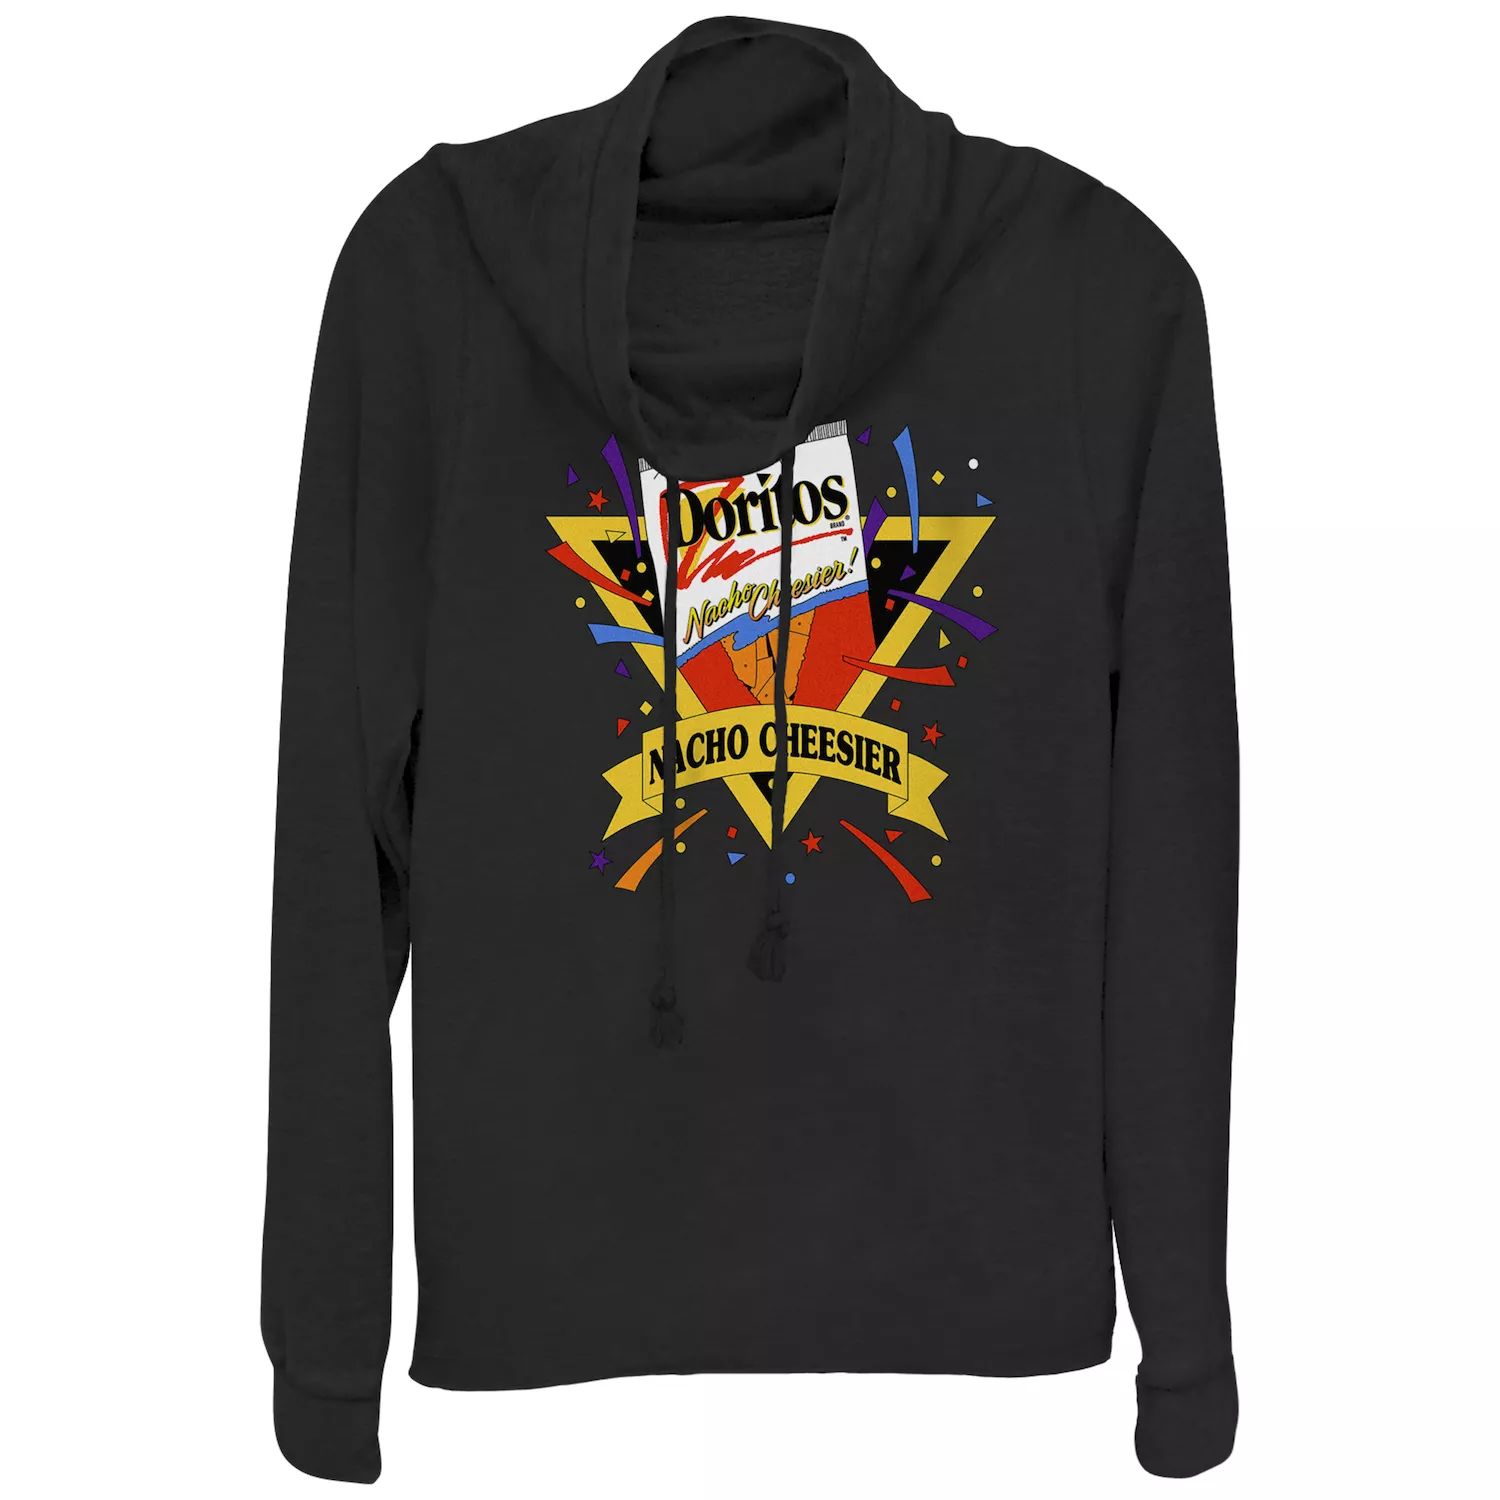 Пуловер с воротником-хомутом и винтажным логотипом Doritos Nacho Cheesier для юниоров Doritos doritos dinamita flaming hot 145 gm